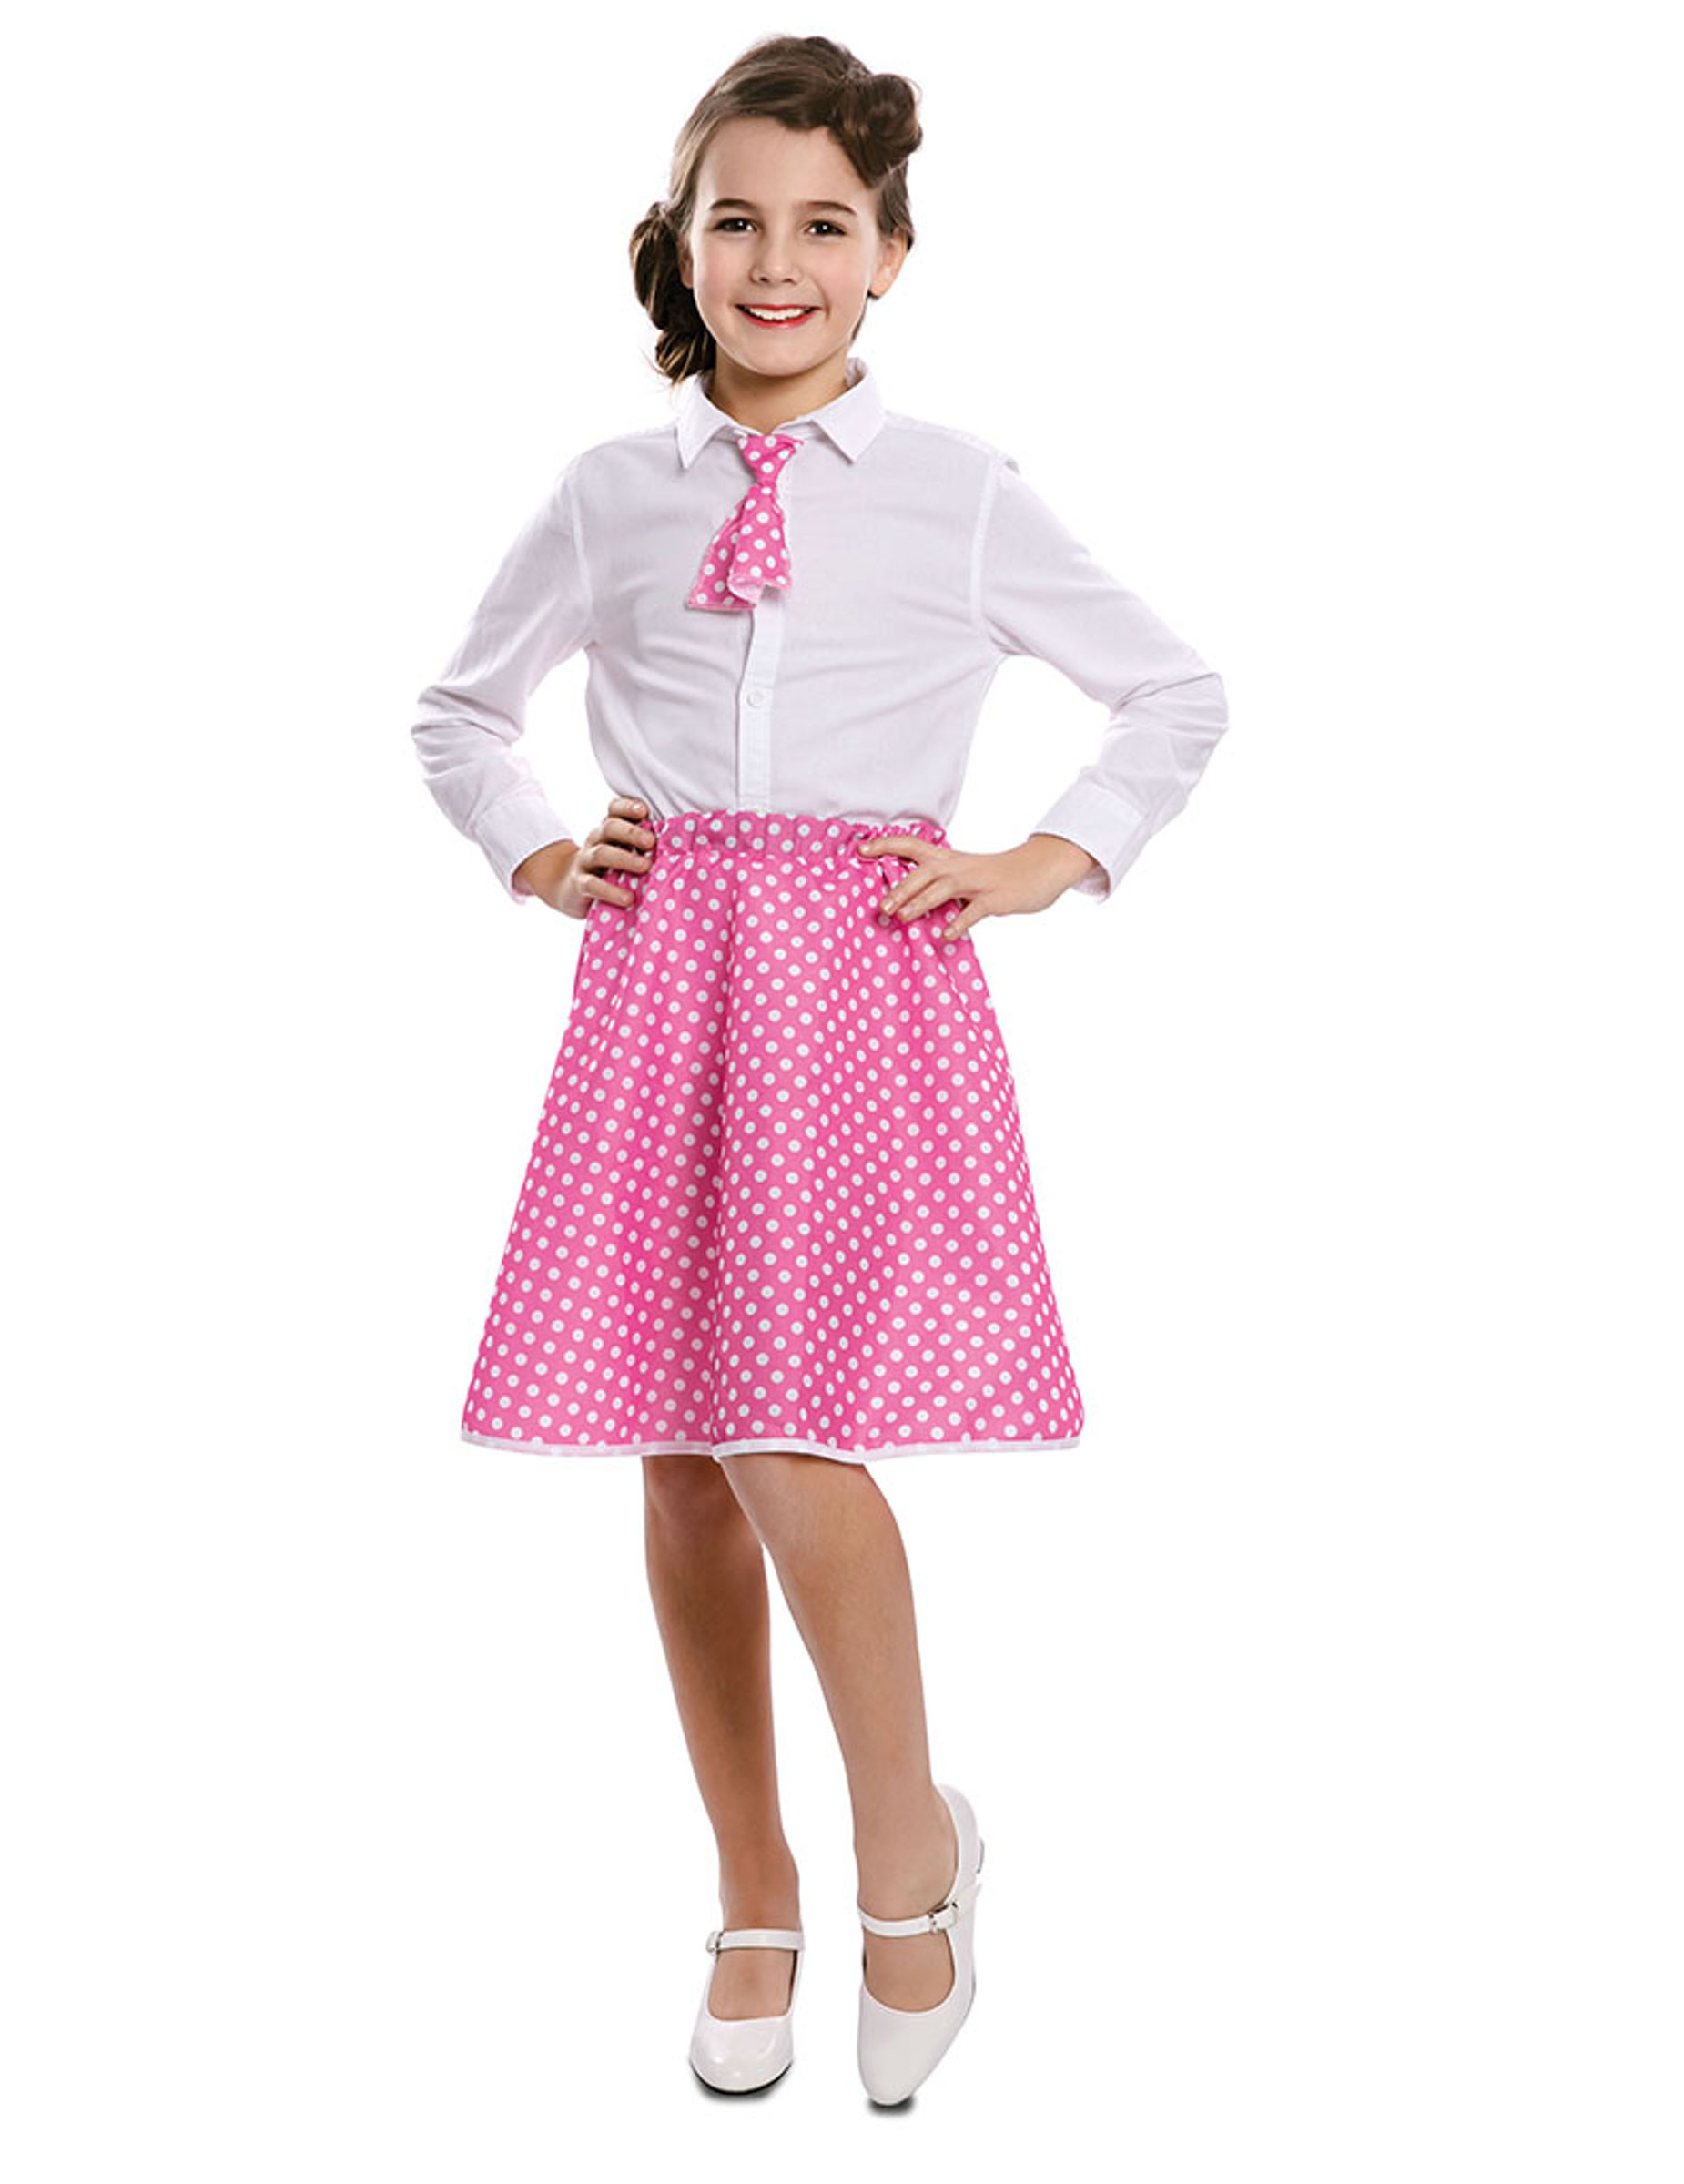 50er Jahre Pin-up Kostüm für Mädchen weiss-rosafarben von EUROCARNAVALES